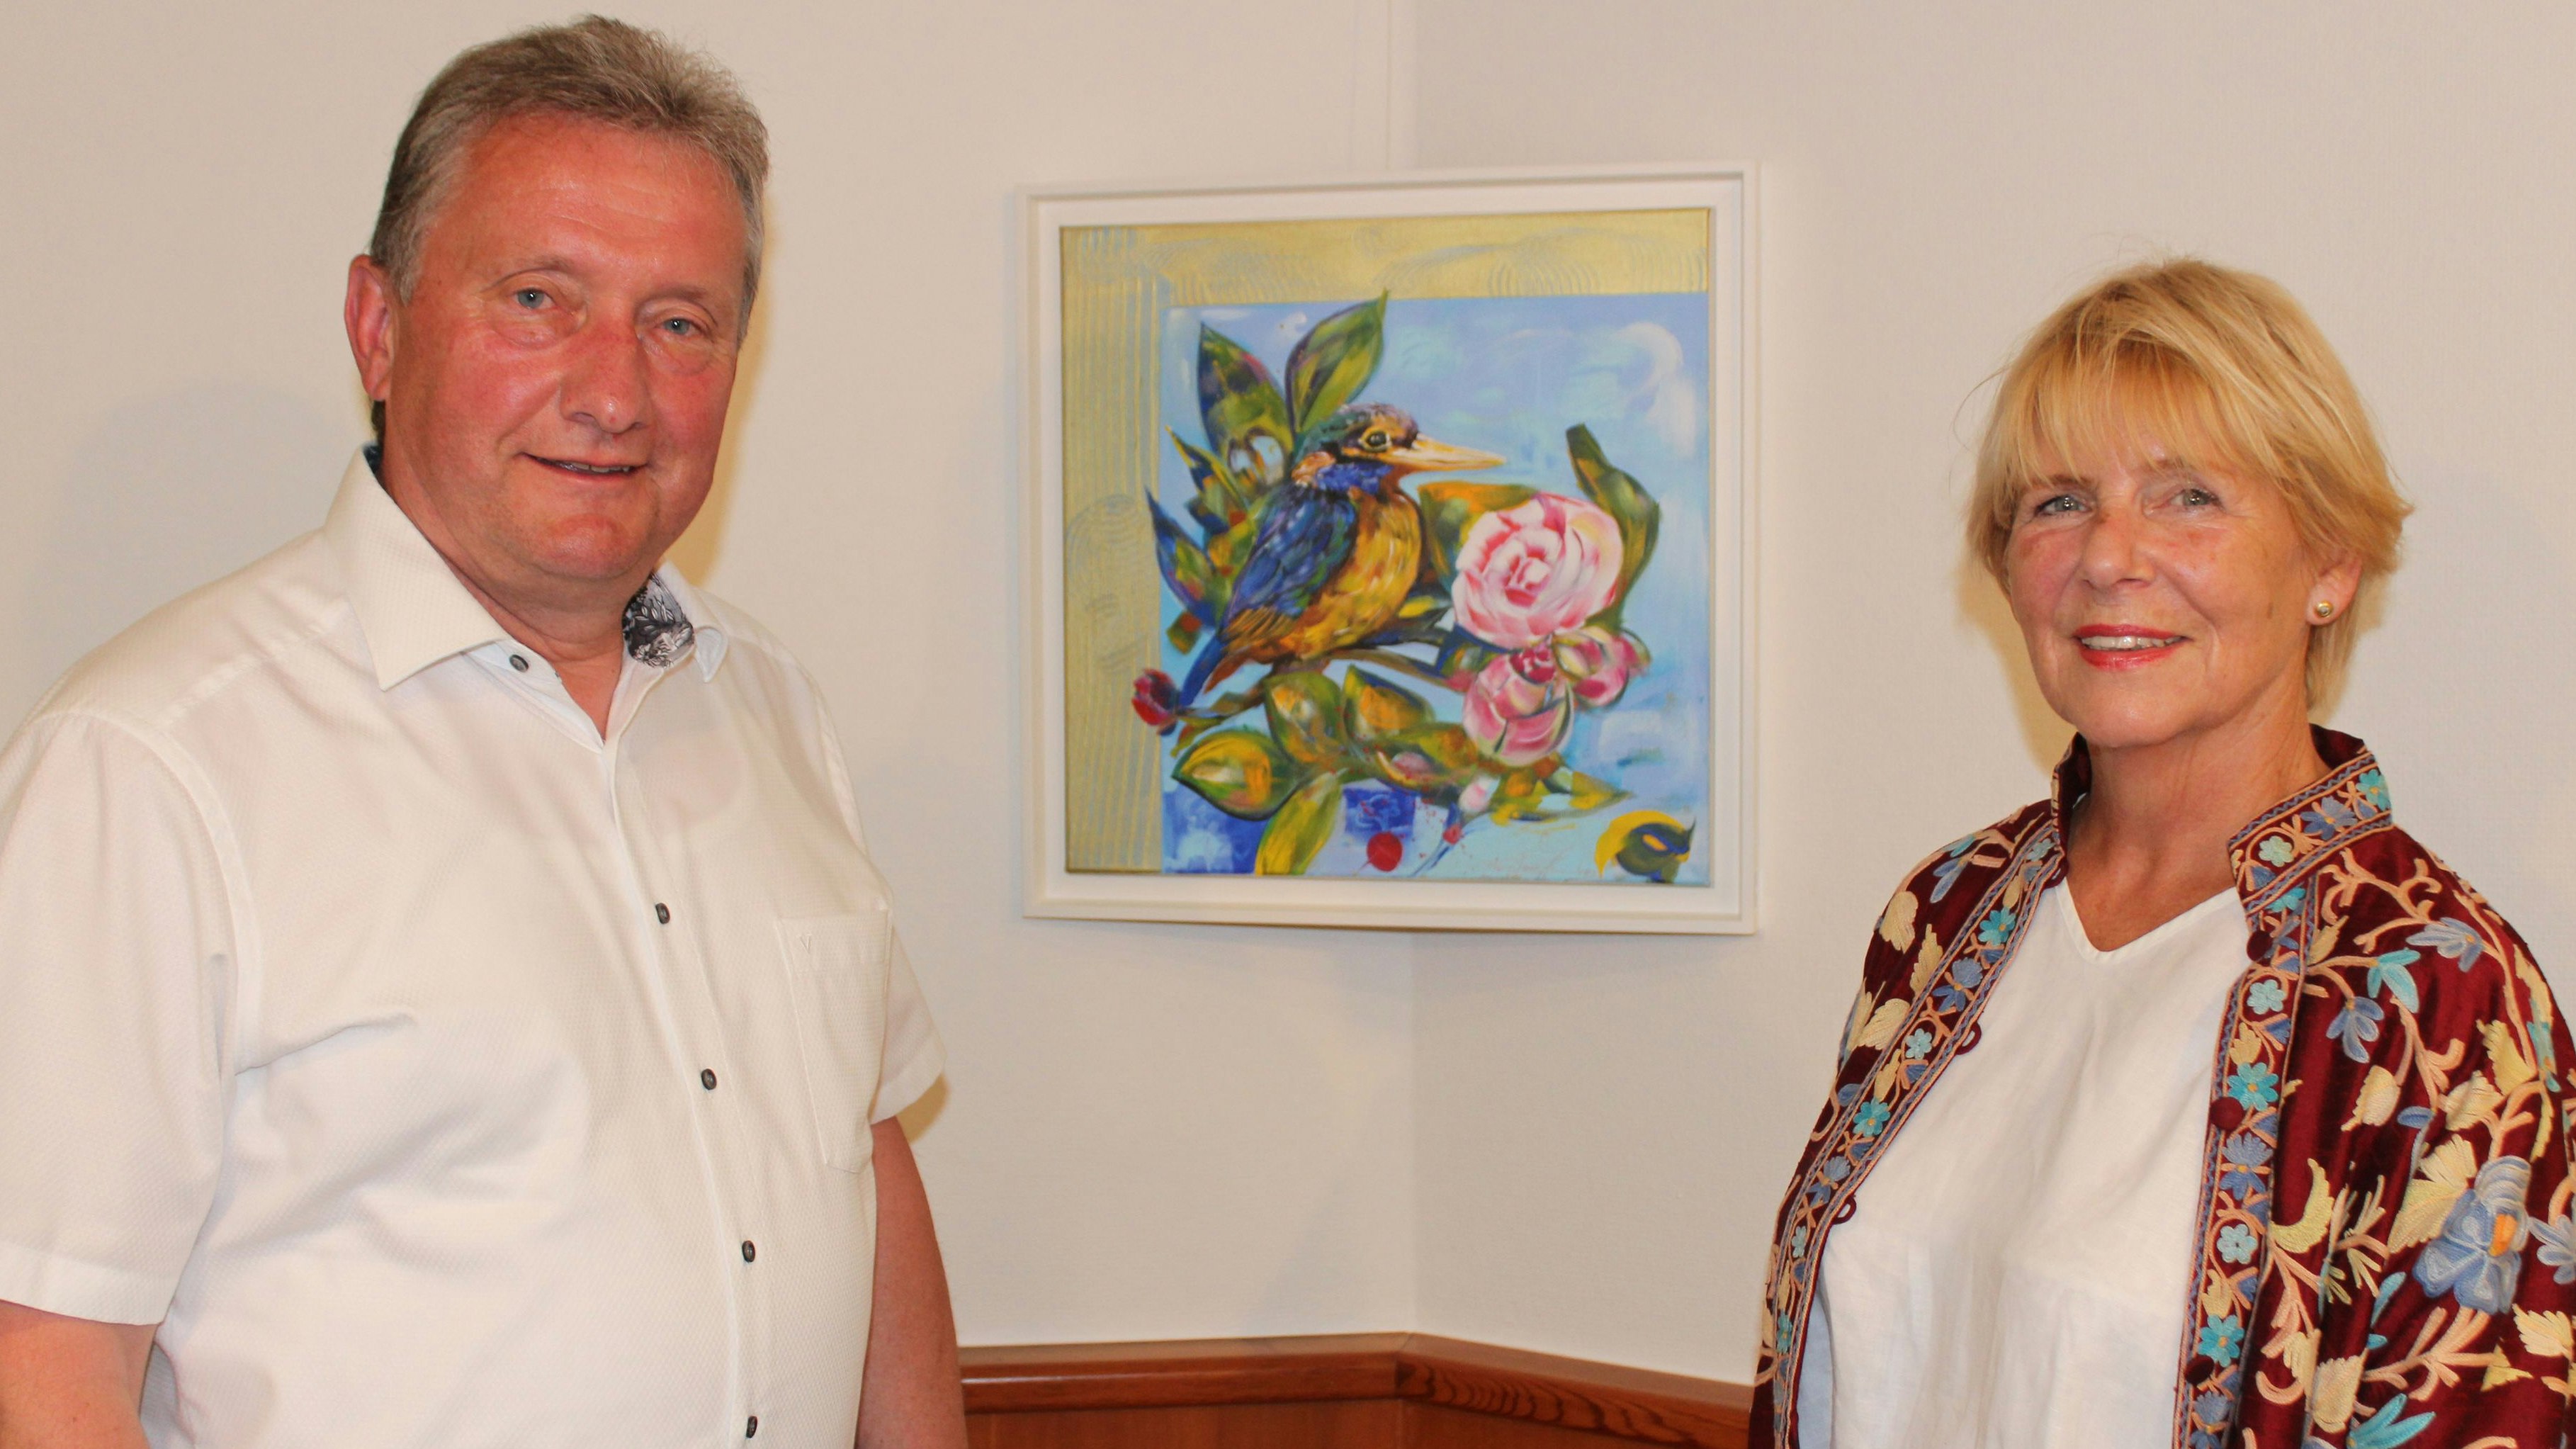 Bürgermeister Gerd Meyer (links) im Gespräch mit Künstlerin Ingelore Kreienborg (rechts). Im Hintergrund eines der kleineren Werke. Foto: Heinzel